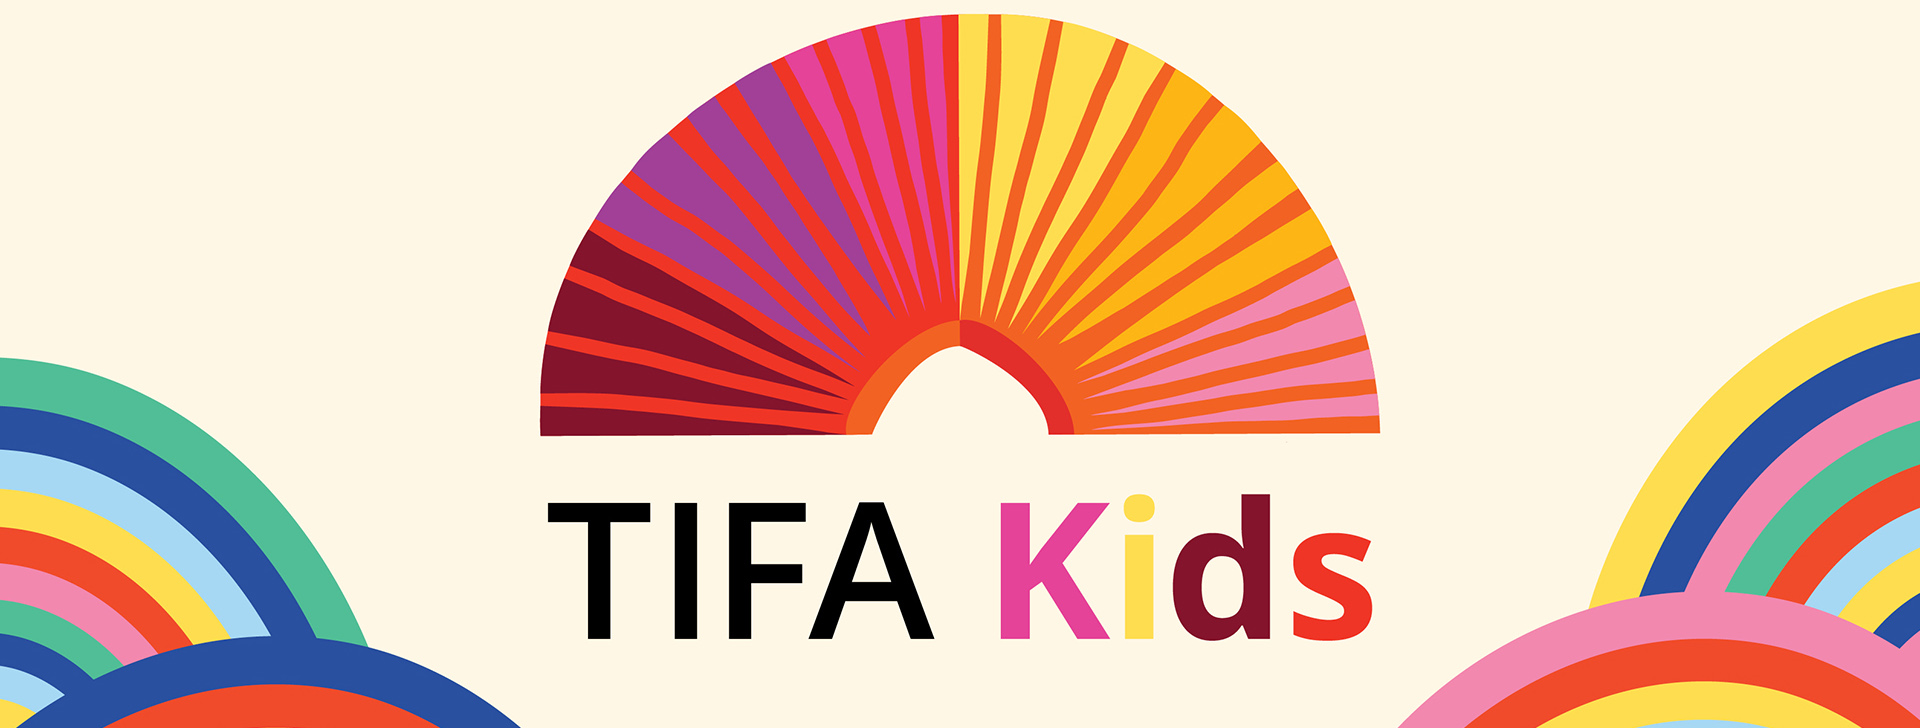 TIFA Kids horizontal banner